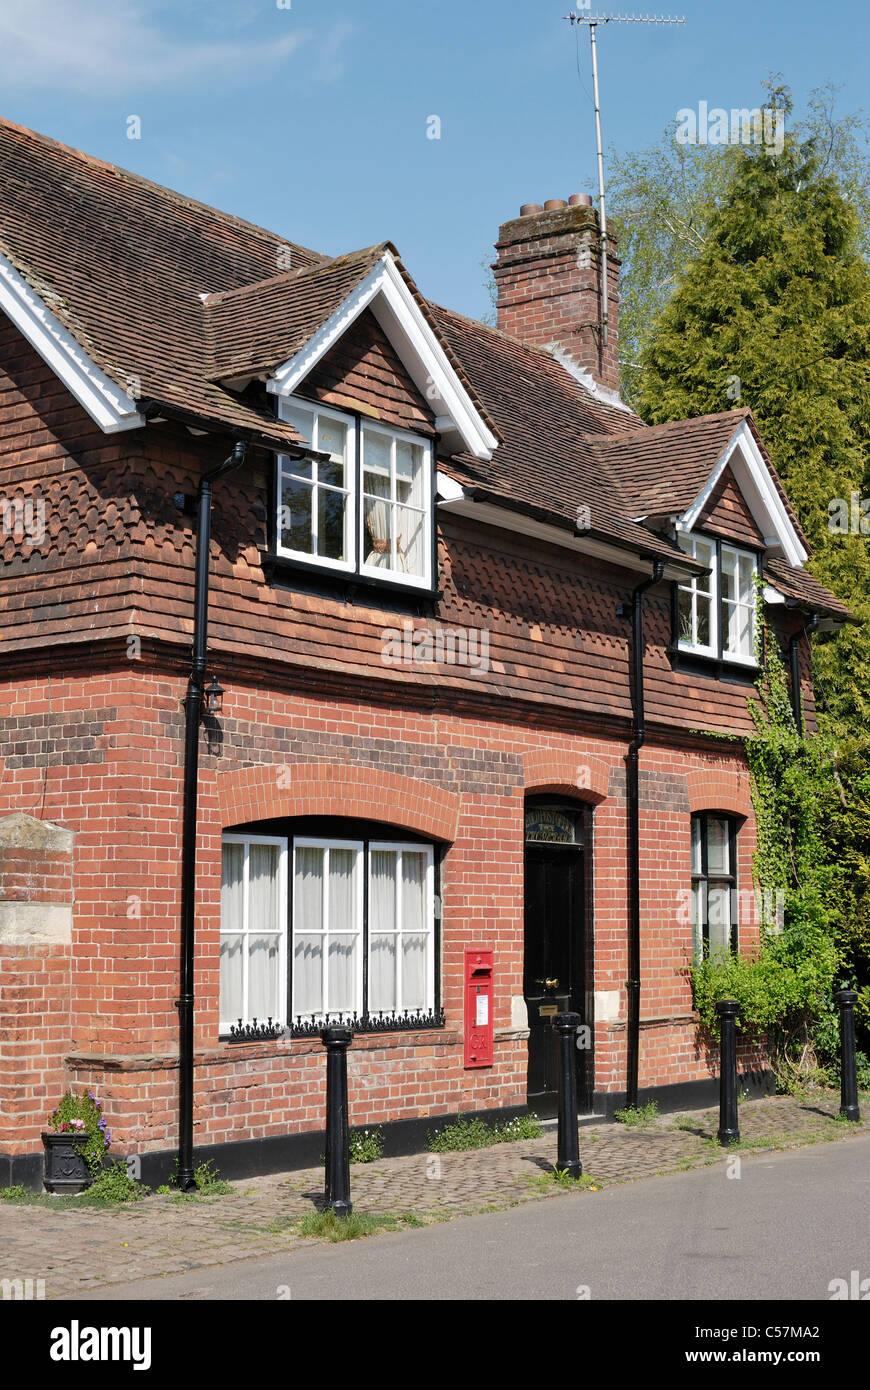 Le bureau de poste dans le village de Shoreham, dans le Kent, en Angleterre. Bâtiment de briques et de tuiles Banque D'Images